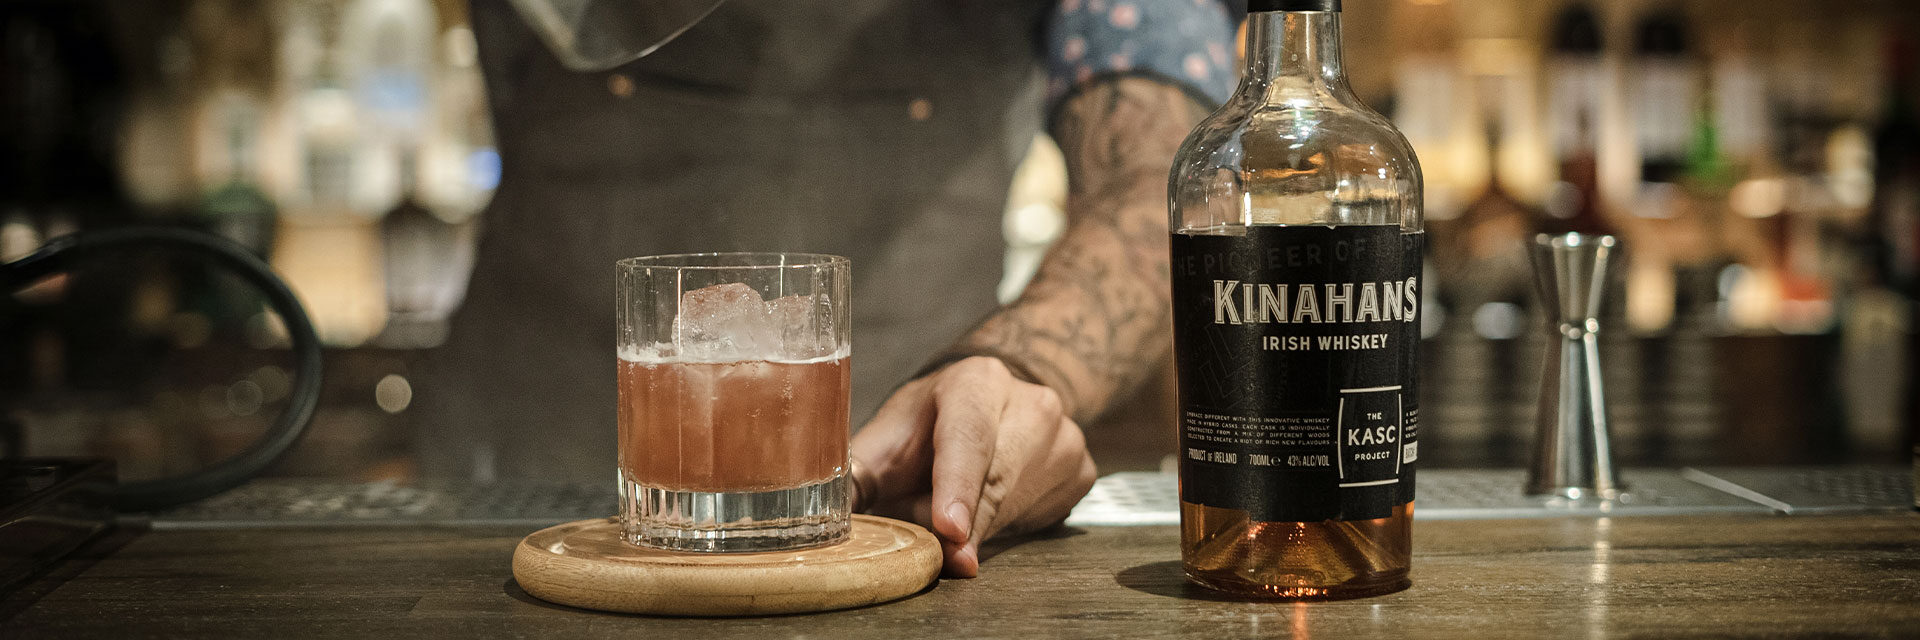 Pioneer Irish Kinahan\'s Original of The - Whiskey Whiskey